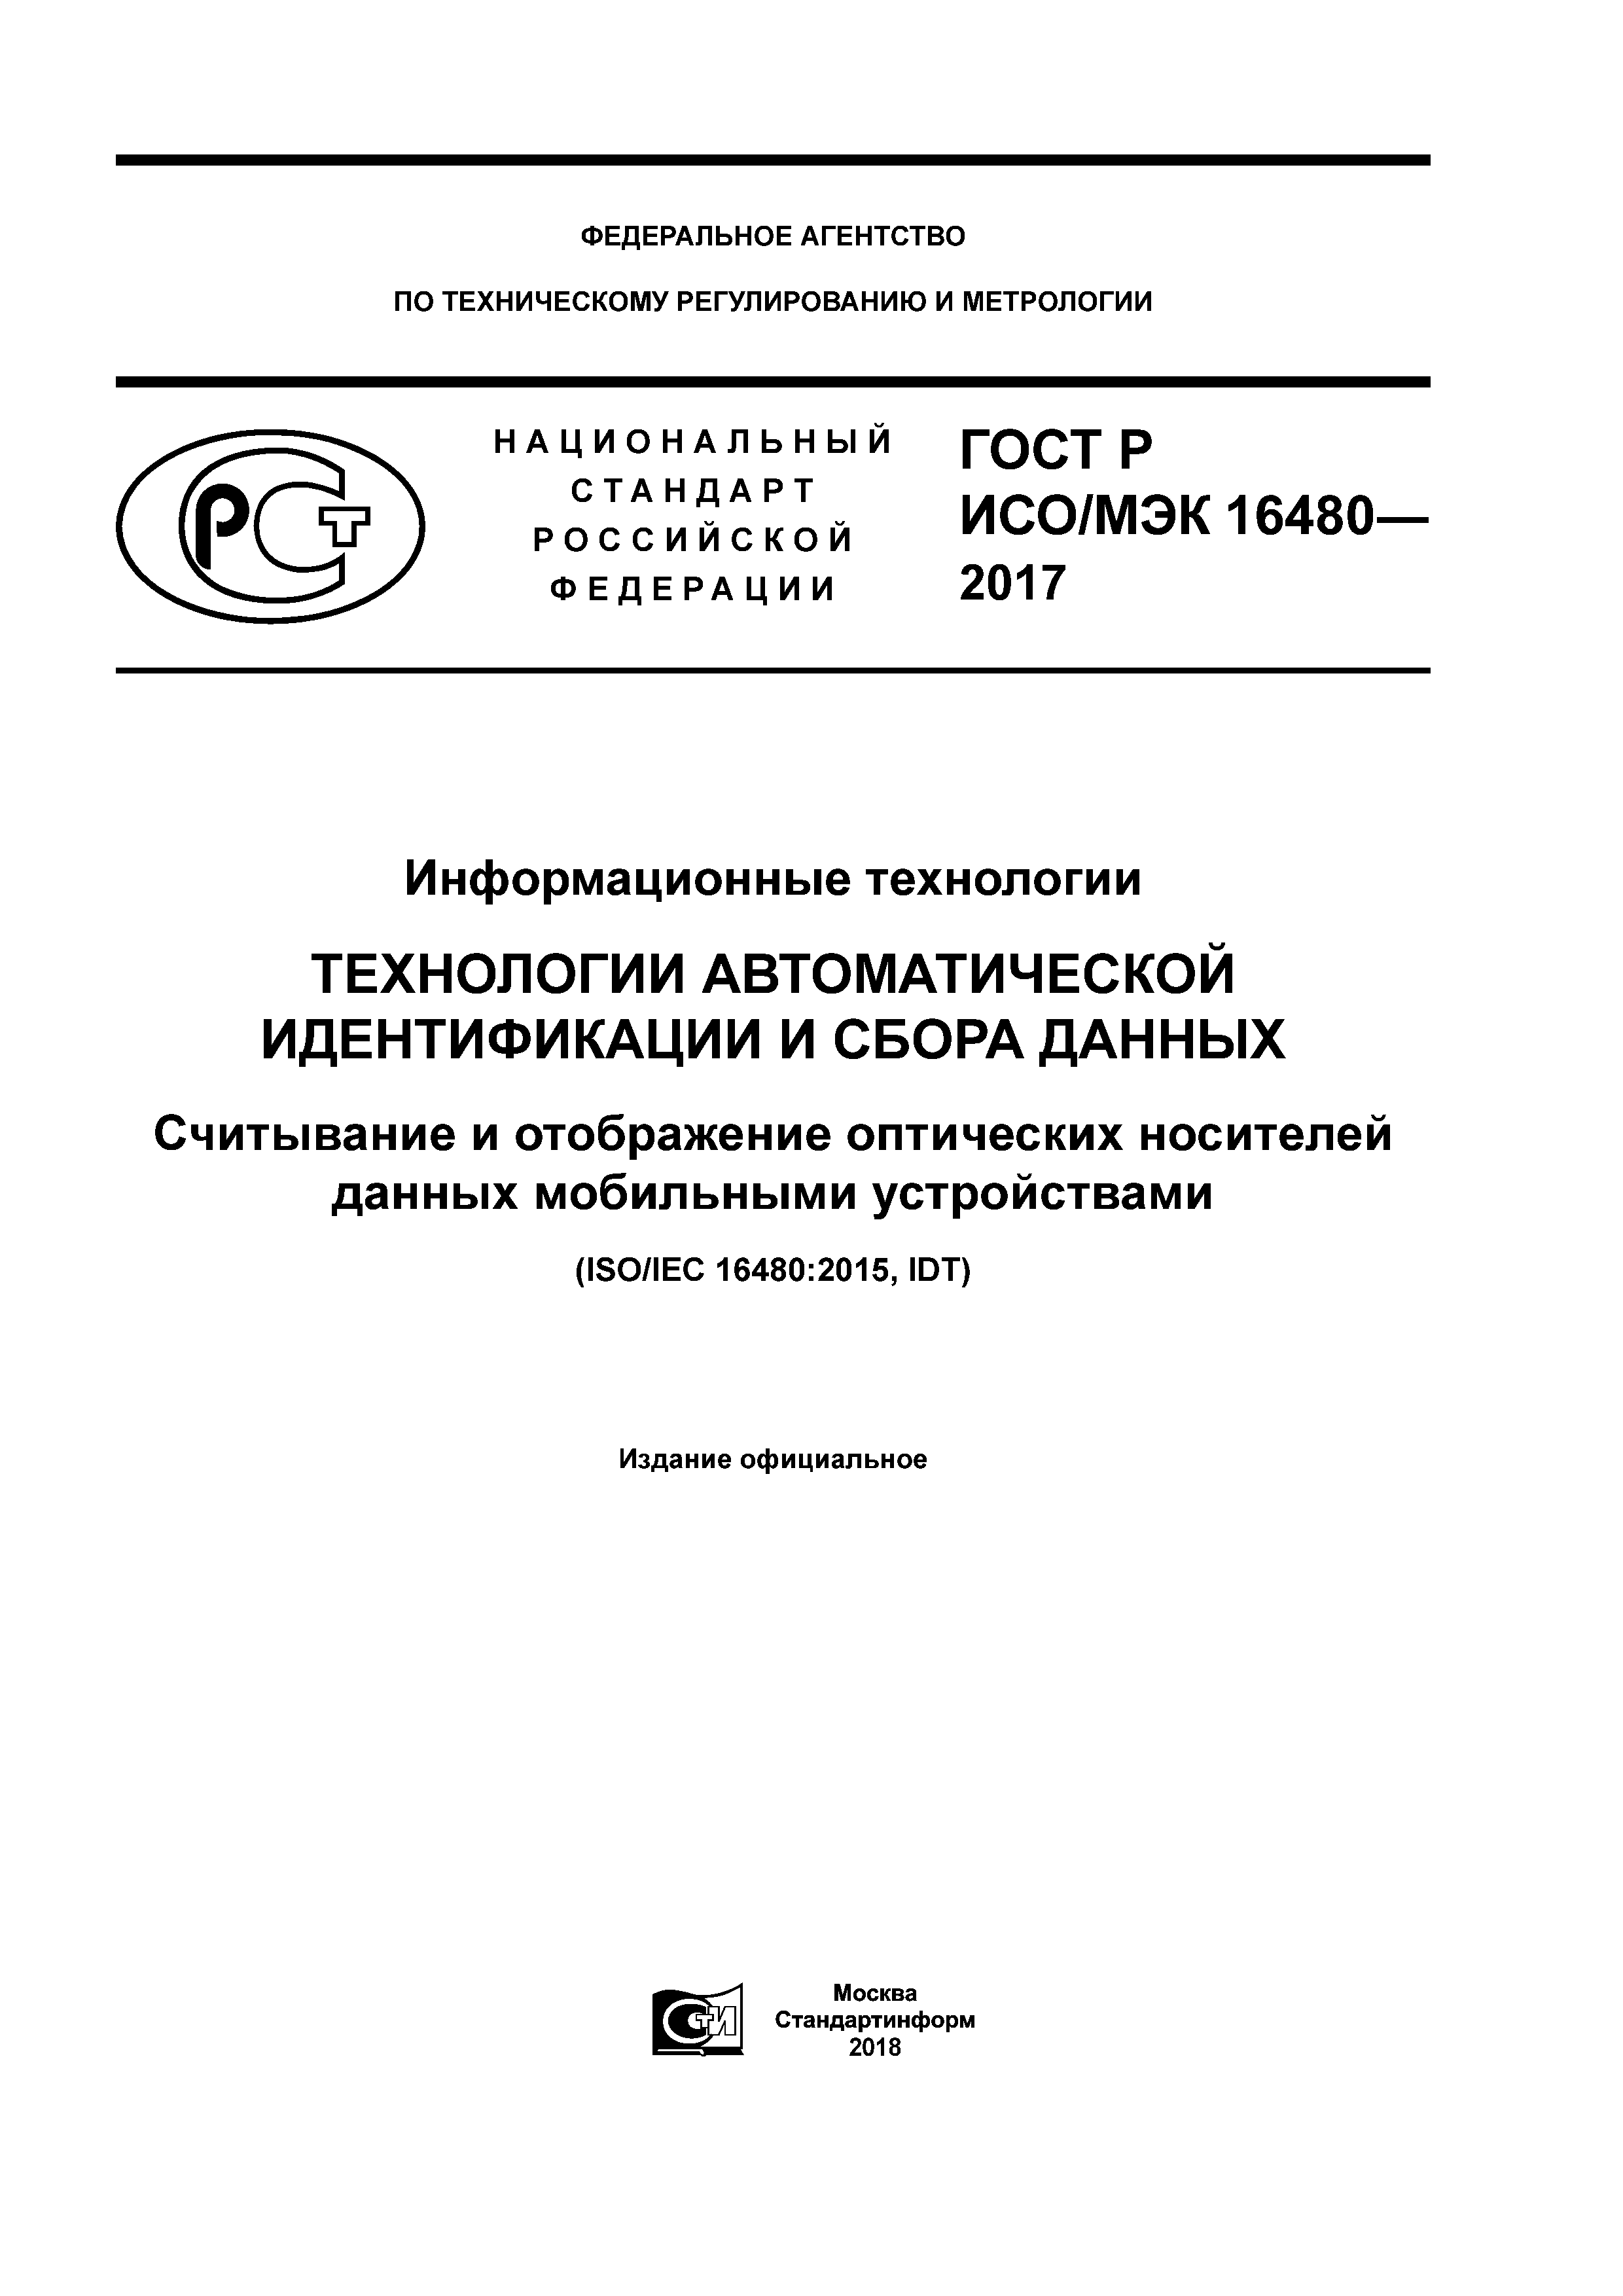 ГОСТ Р ИСО/МЭК 16480-2017